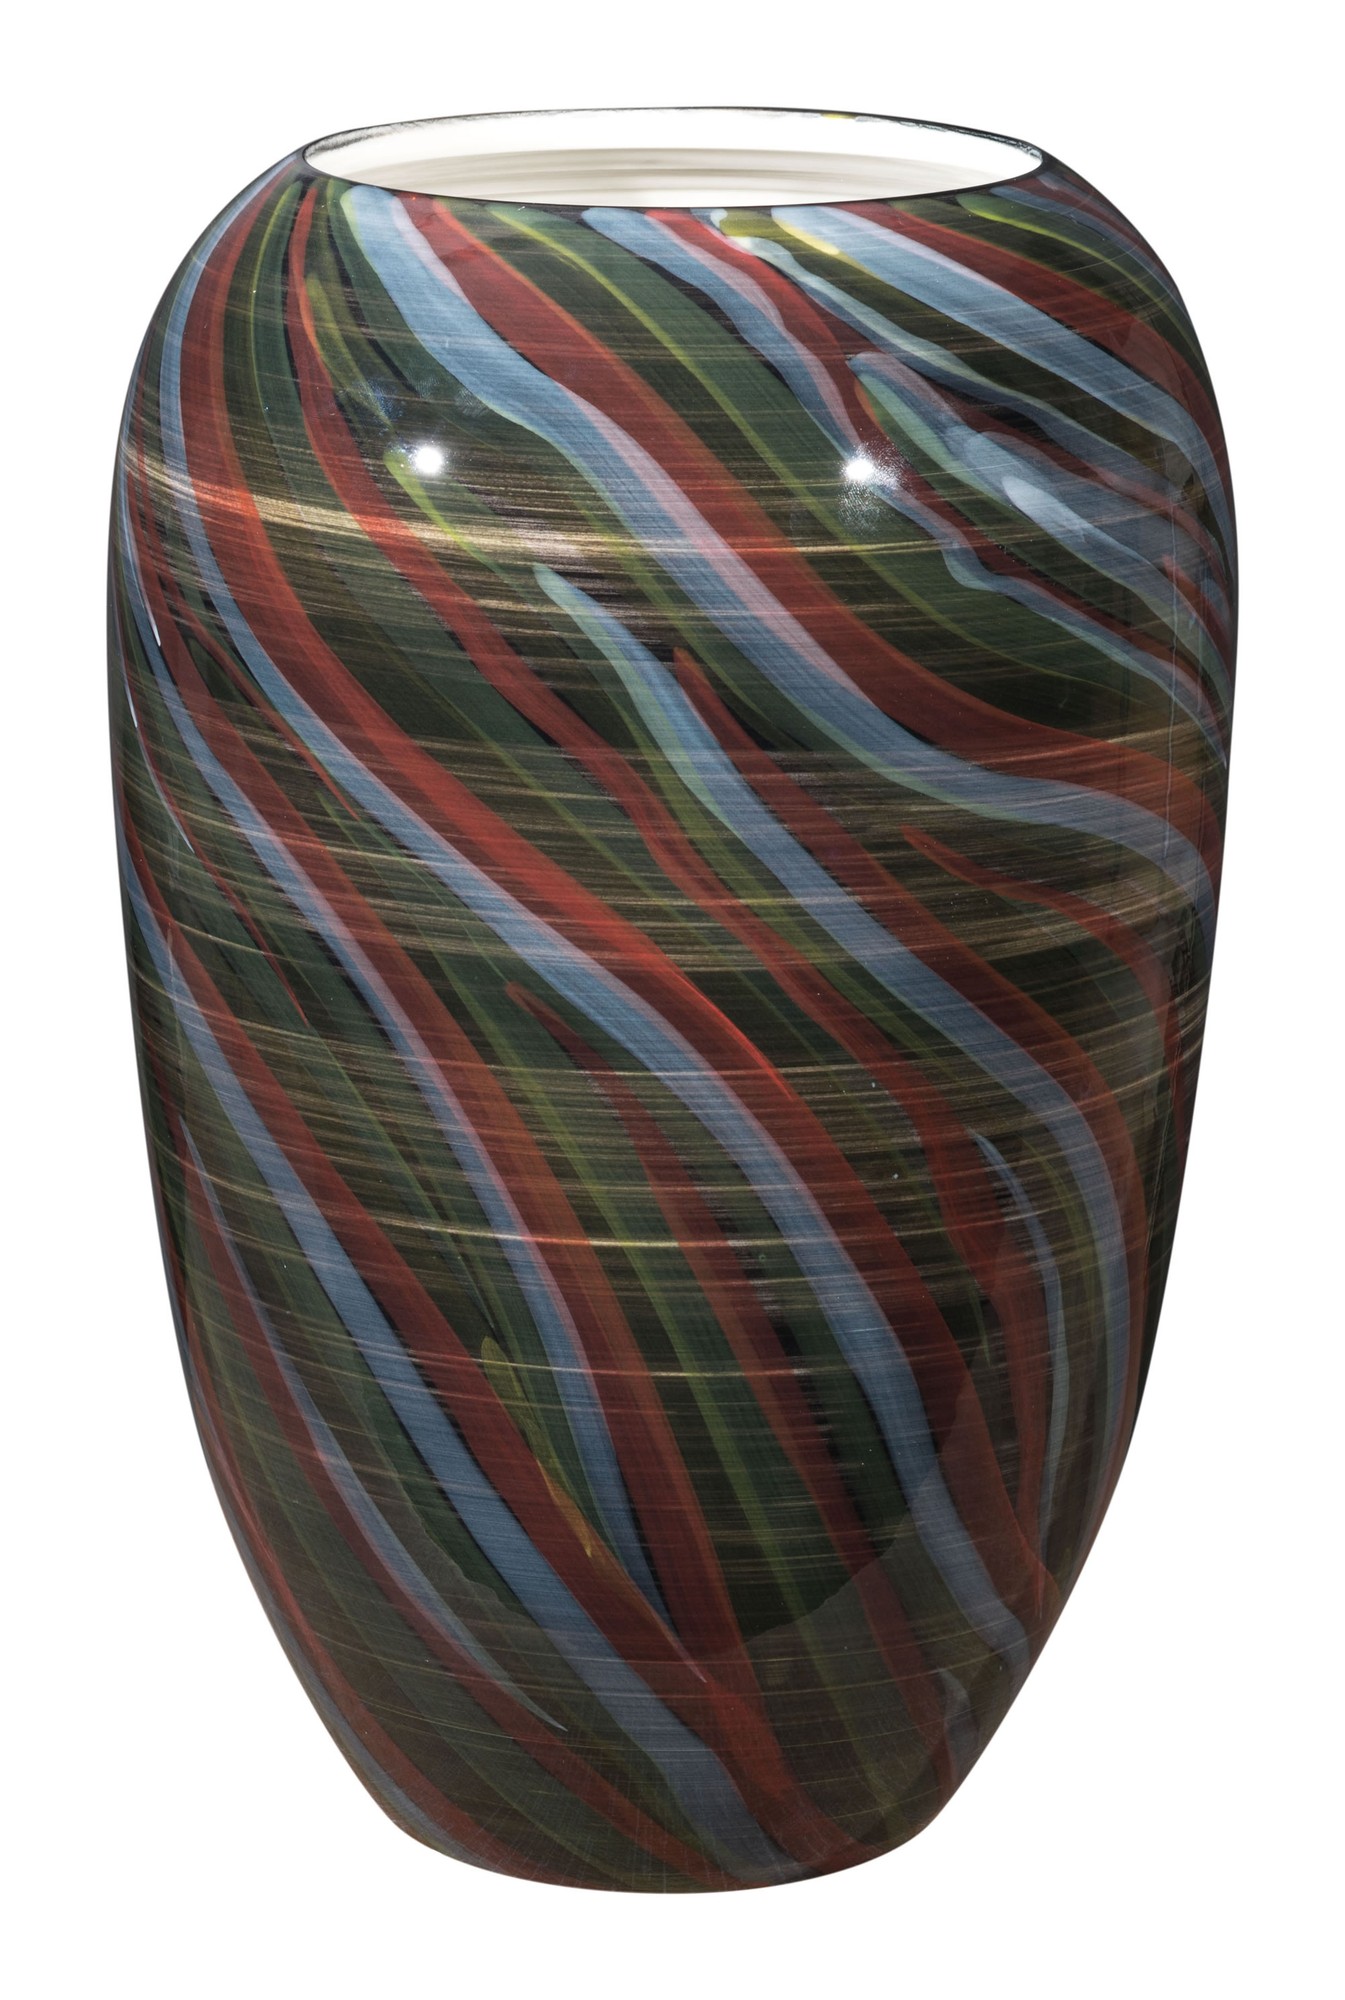 10.2" x 10.2" x 15.4" Multicolor, Ceramic, Large Vase